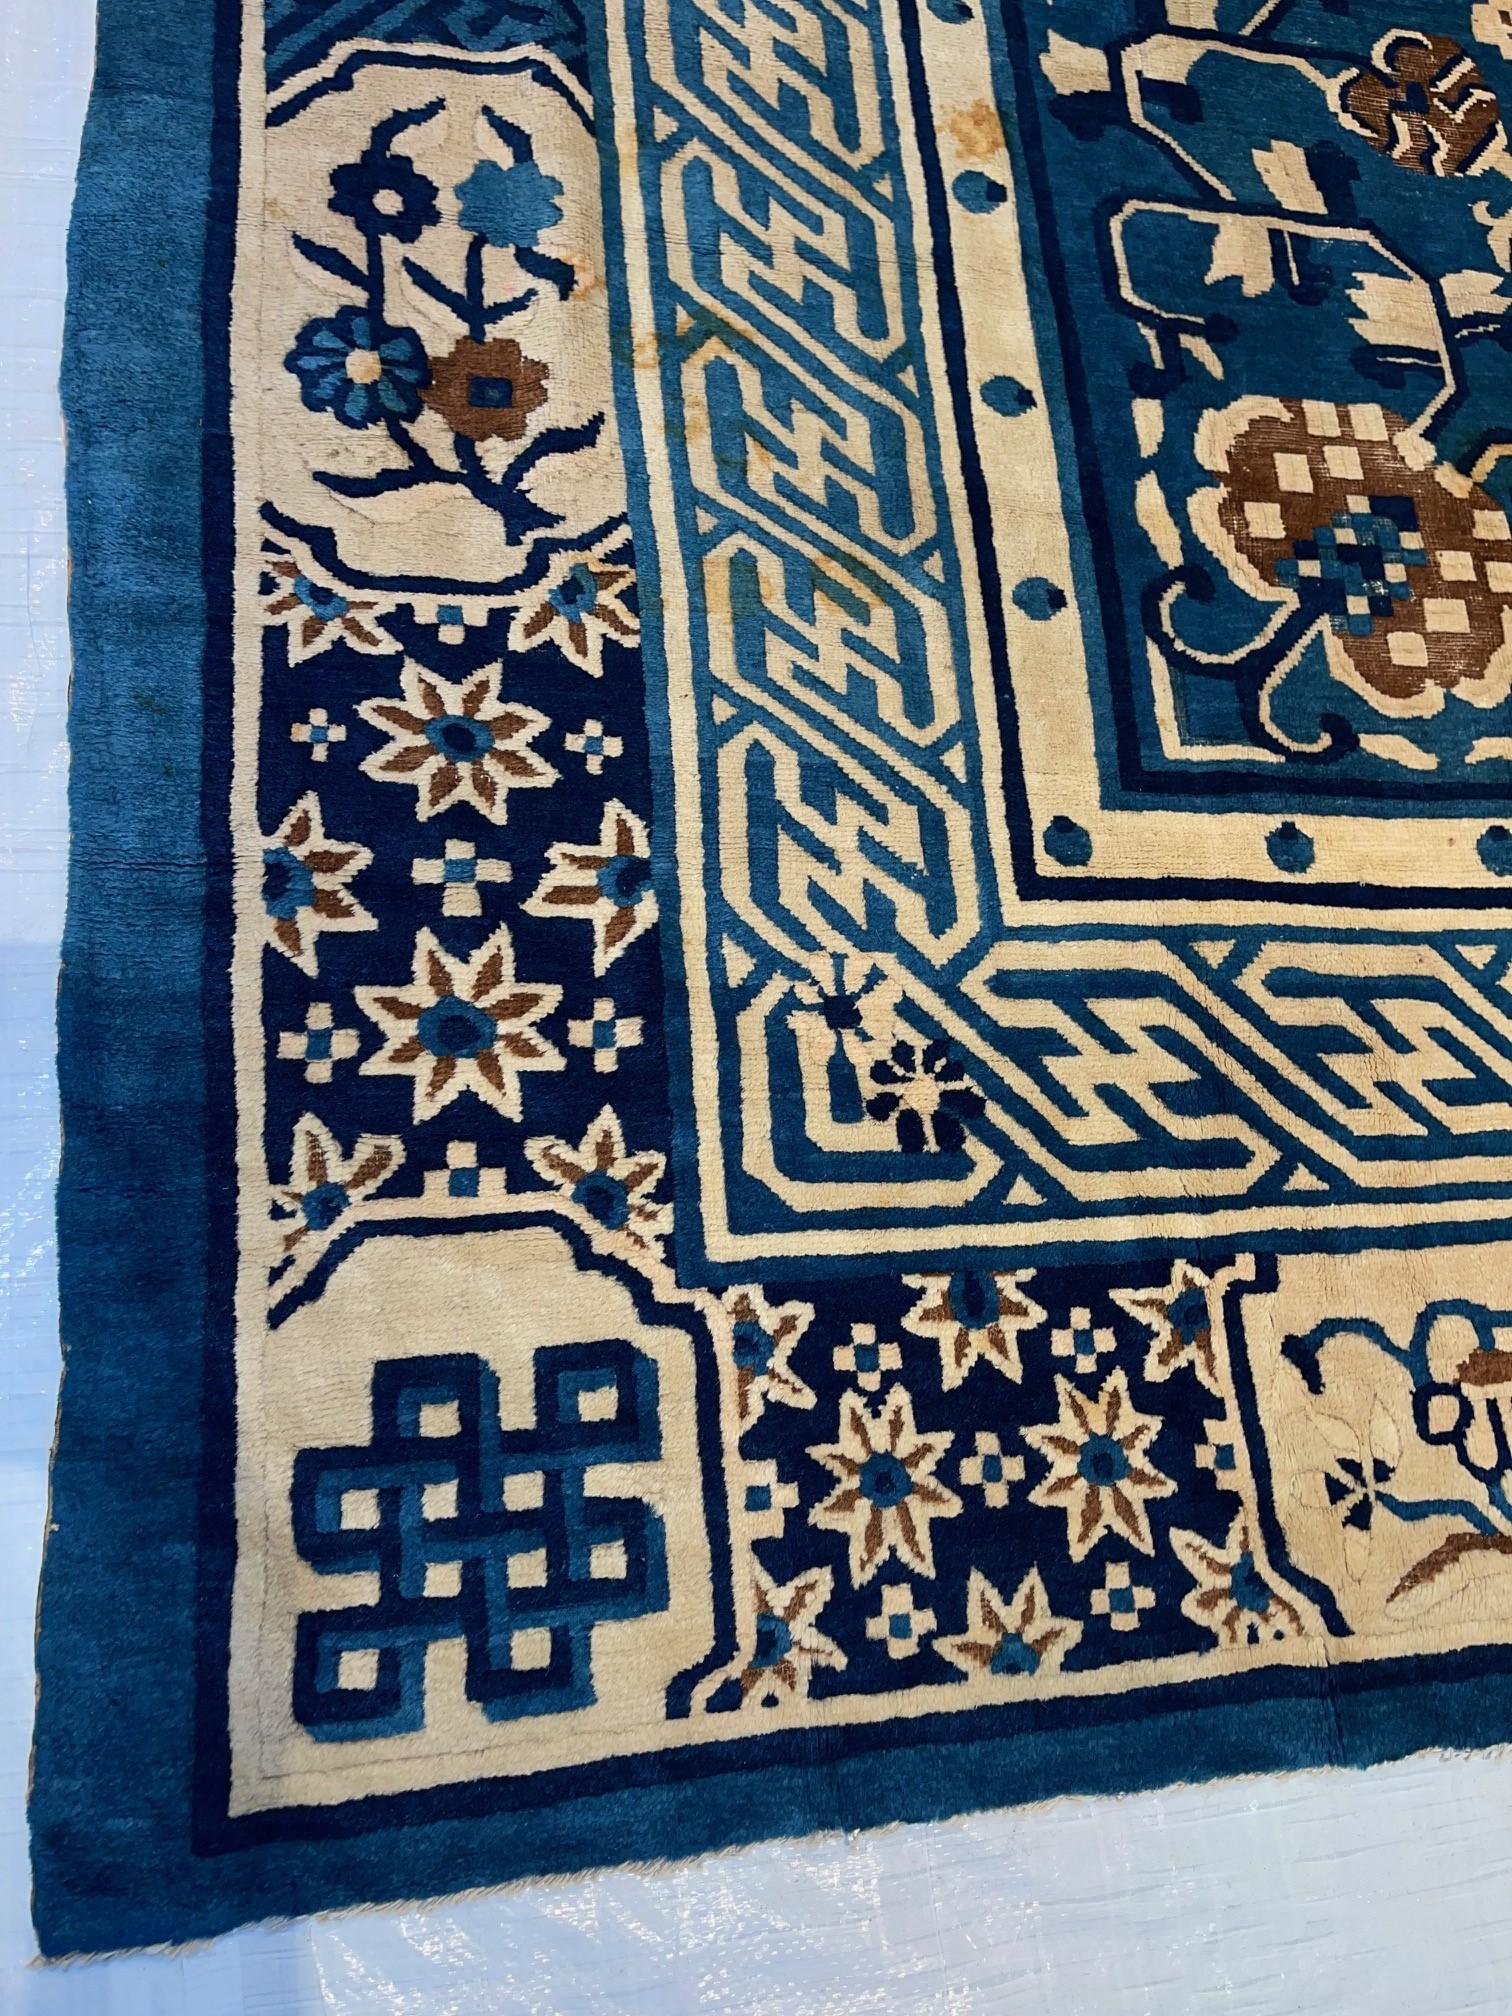 Die älteren antiken chinesischen Teppiche wurden, im Gegensatz zu den meisten anderen chinesischen Warenproduktionen, fast ausschließlich für den internen Verbrauch gewebt. Da sie meist vor europäischen und westlichen Einflüssen geschützt waren, ist